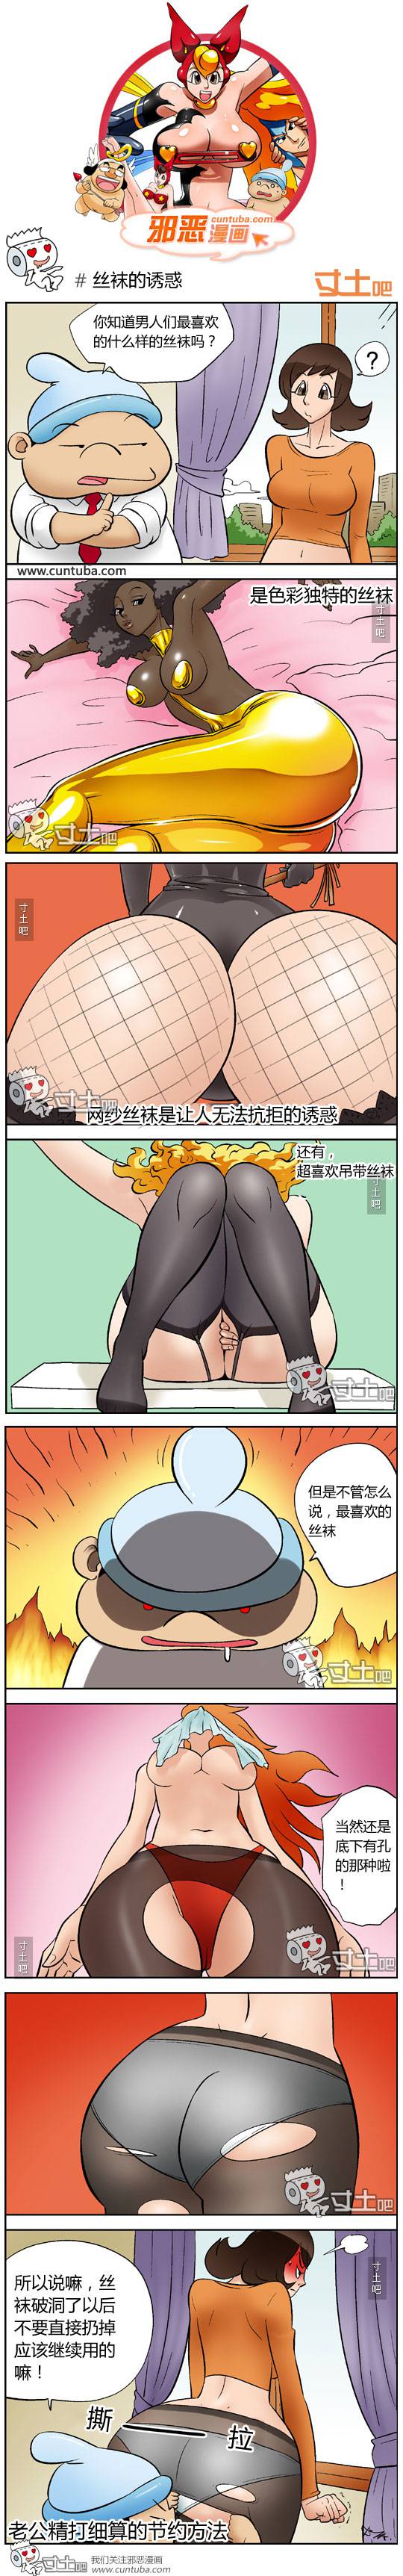 邪恶漫画爆笑囧图第118刊：各种诱惑